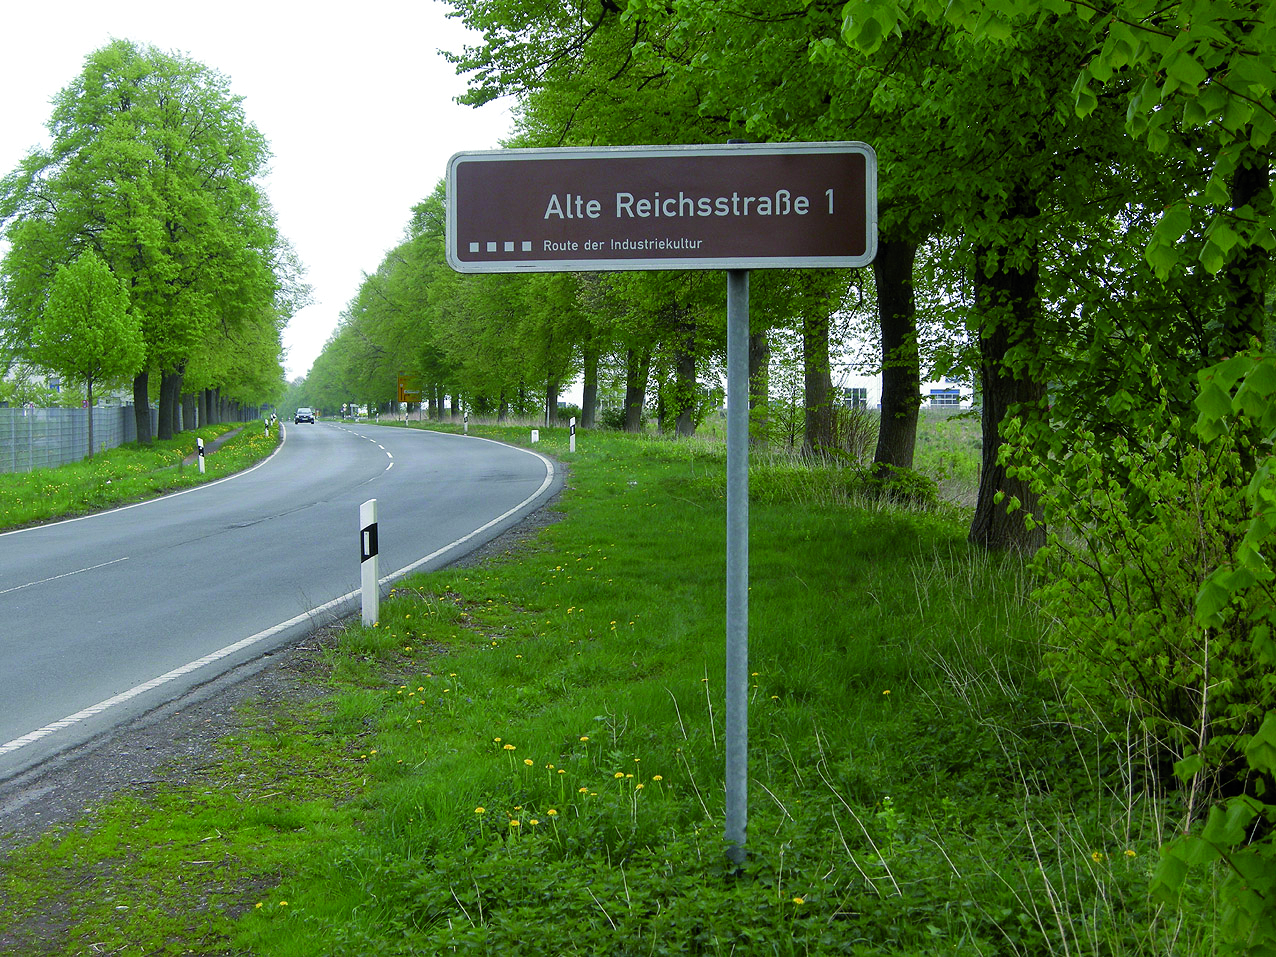 Alte Reichsstraße 1.